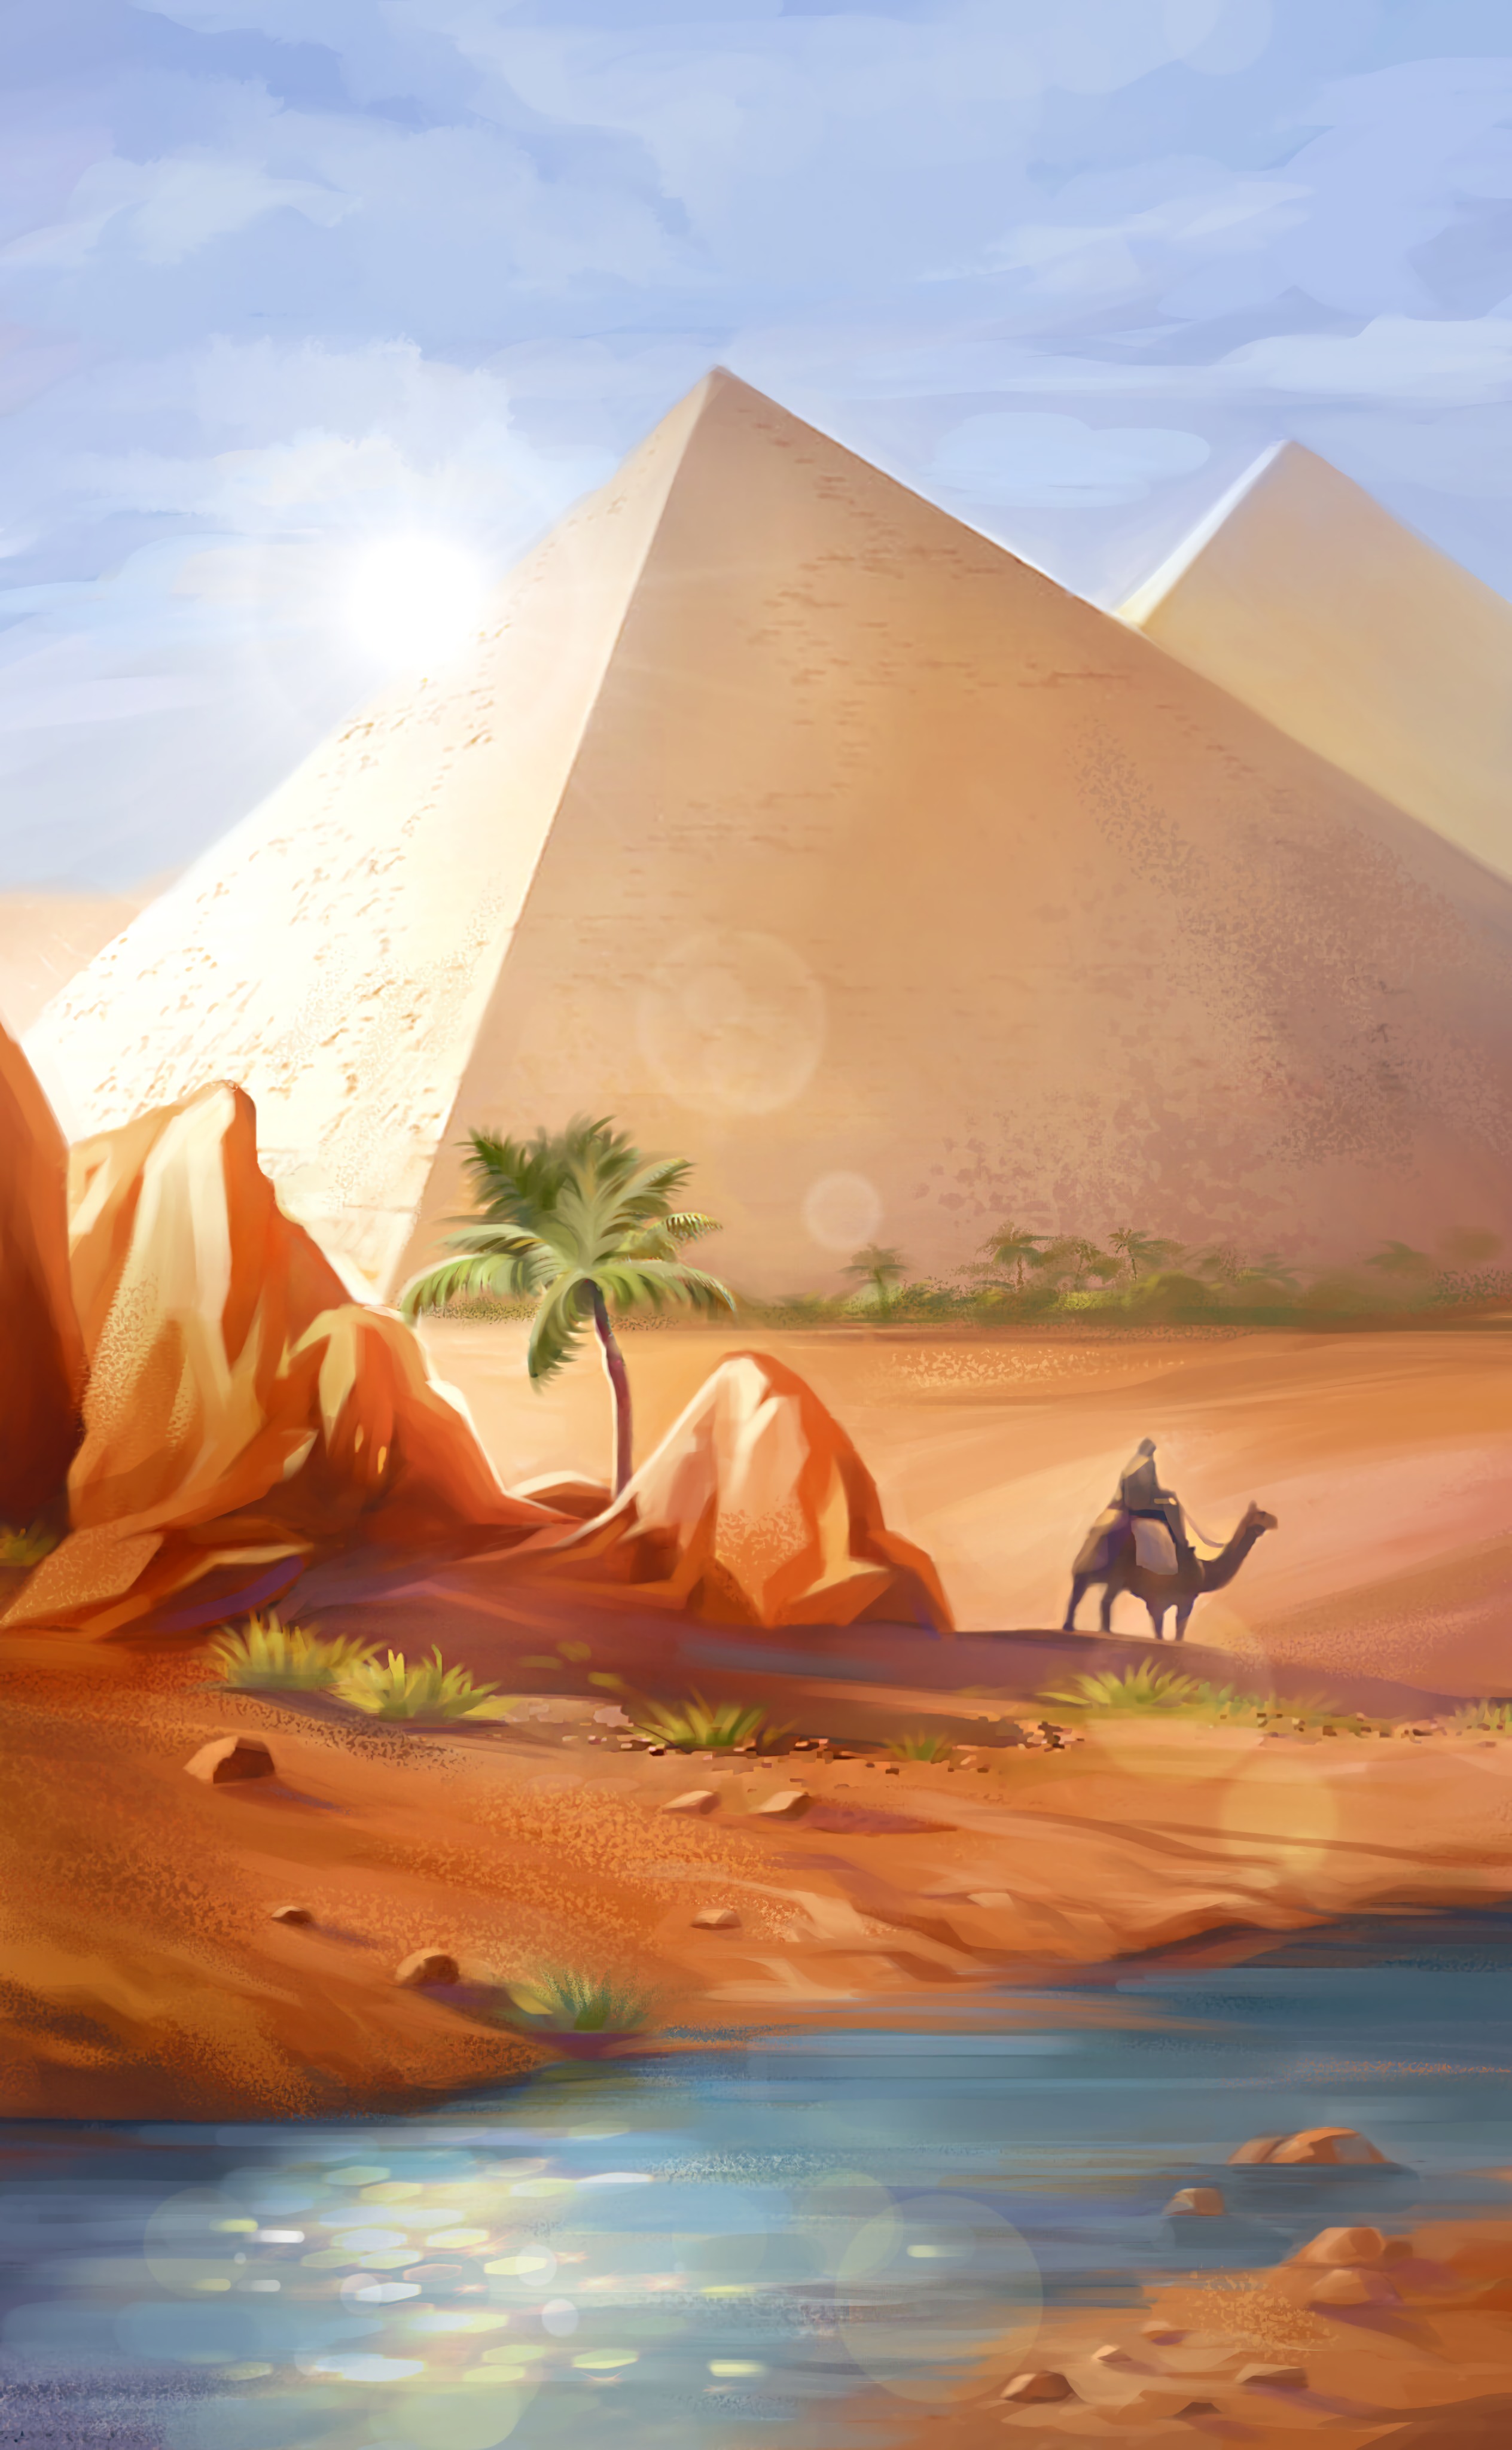 art, pyramids, desert, camel